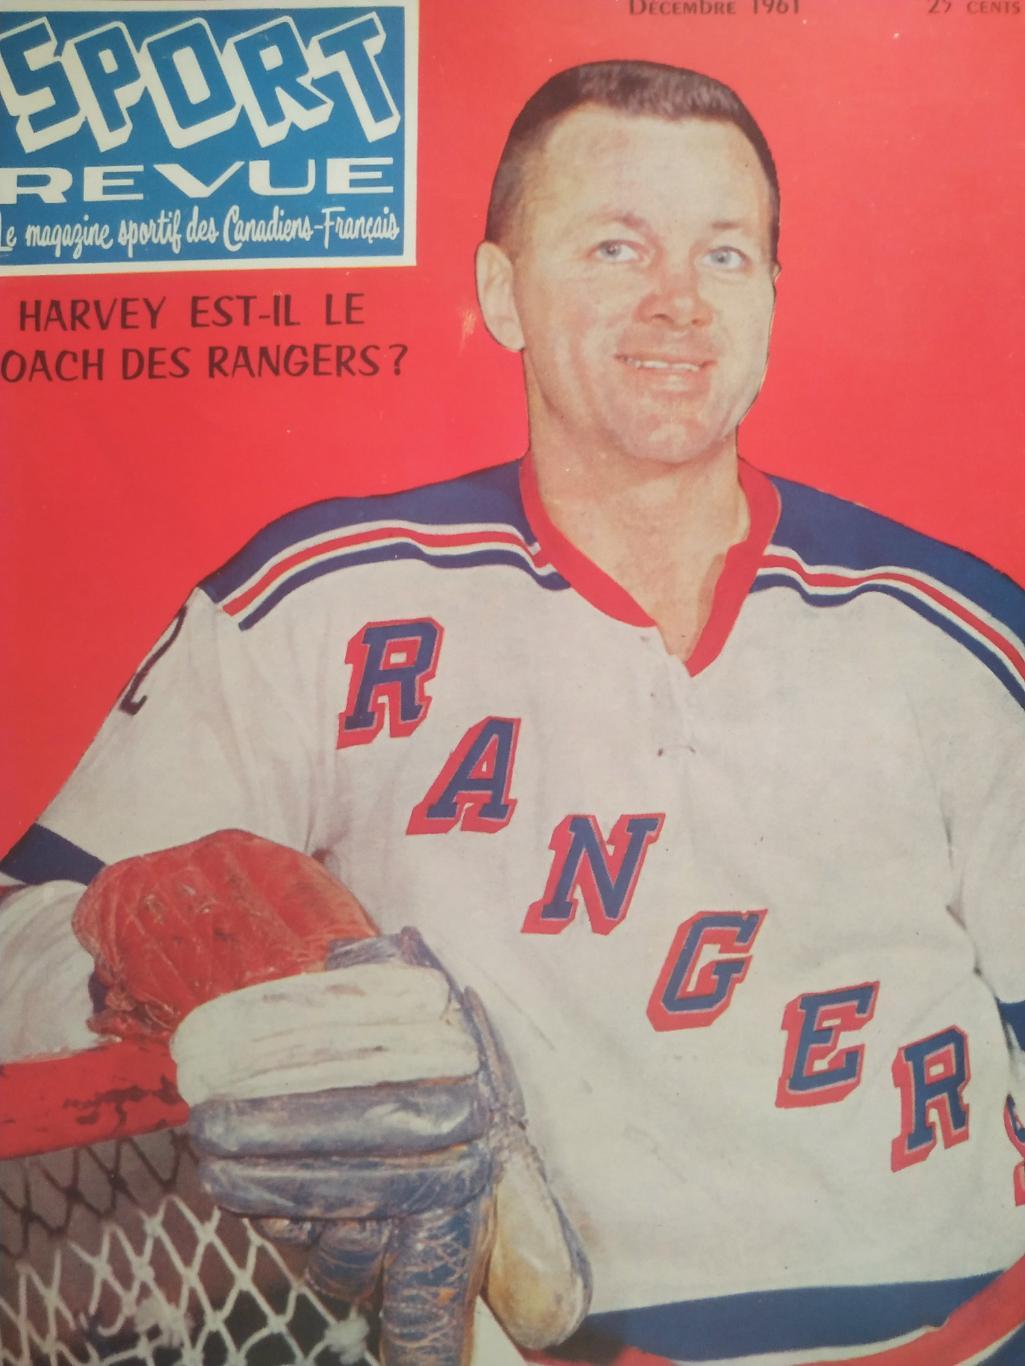 ХОККЕЙ ЖУРНАЛ ЕЖЕМЕСЯЧНИК СПОРТ РЕВЬЮ НХЛ NHL 1961 DECEMBRE SPORT REVUE